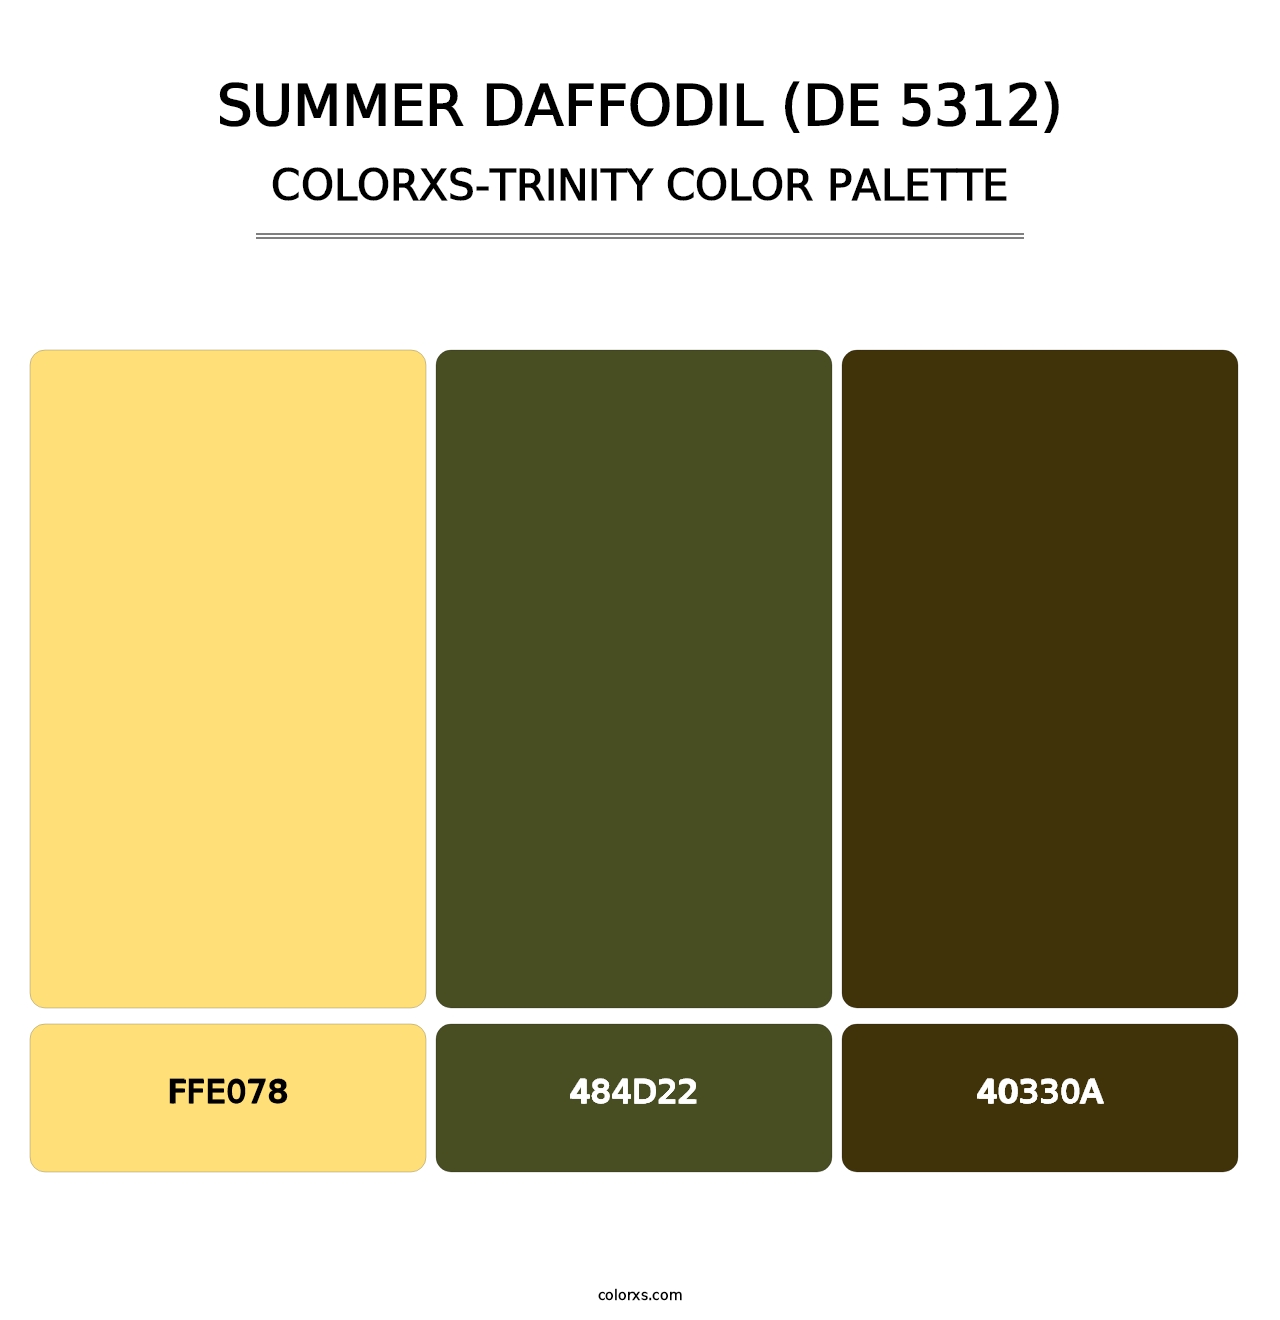 Summer Daffodil (DE 5312) - Colorxs Trinity Palette